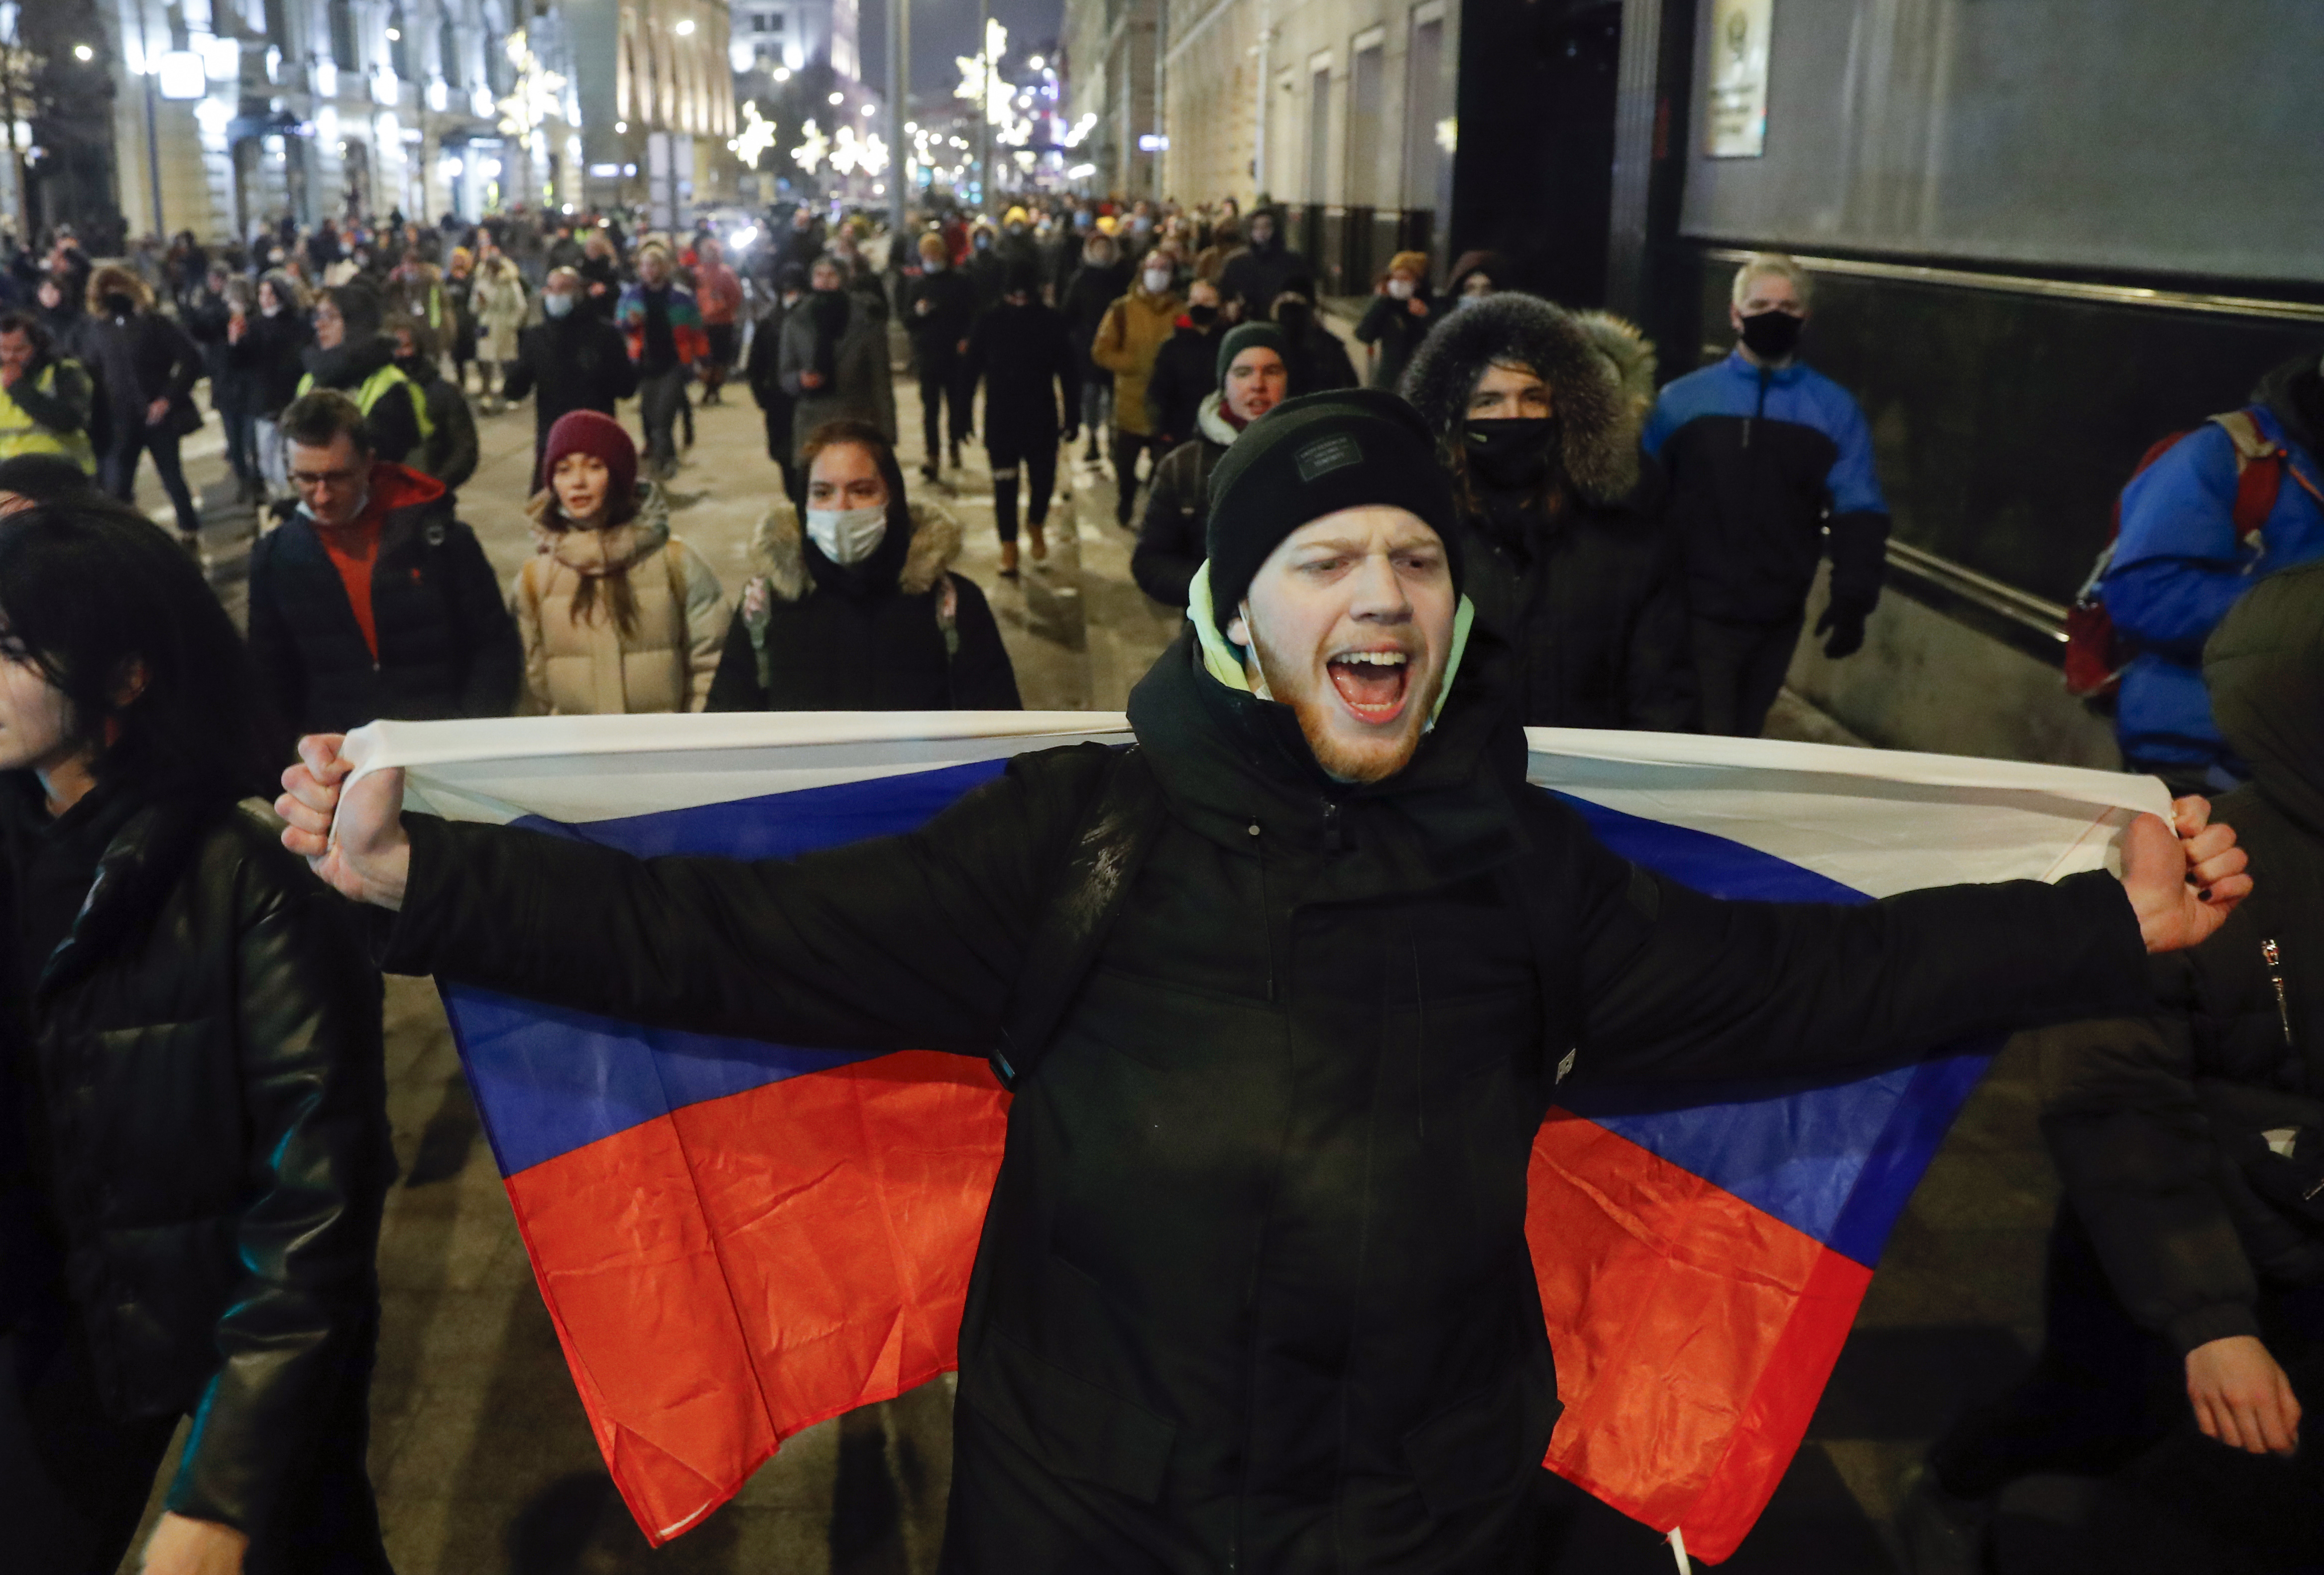 Митинг про навального